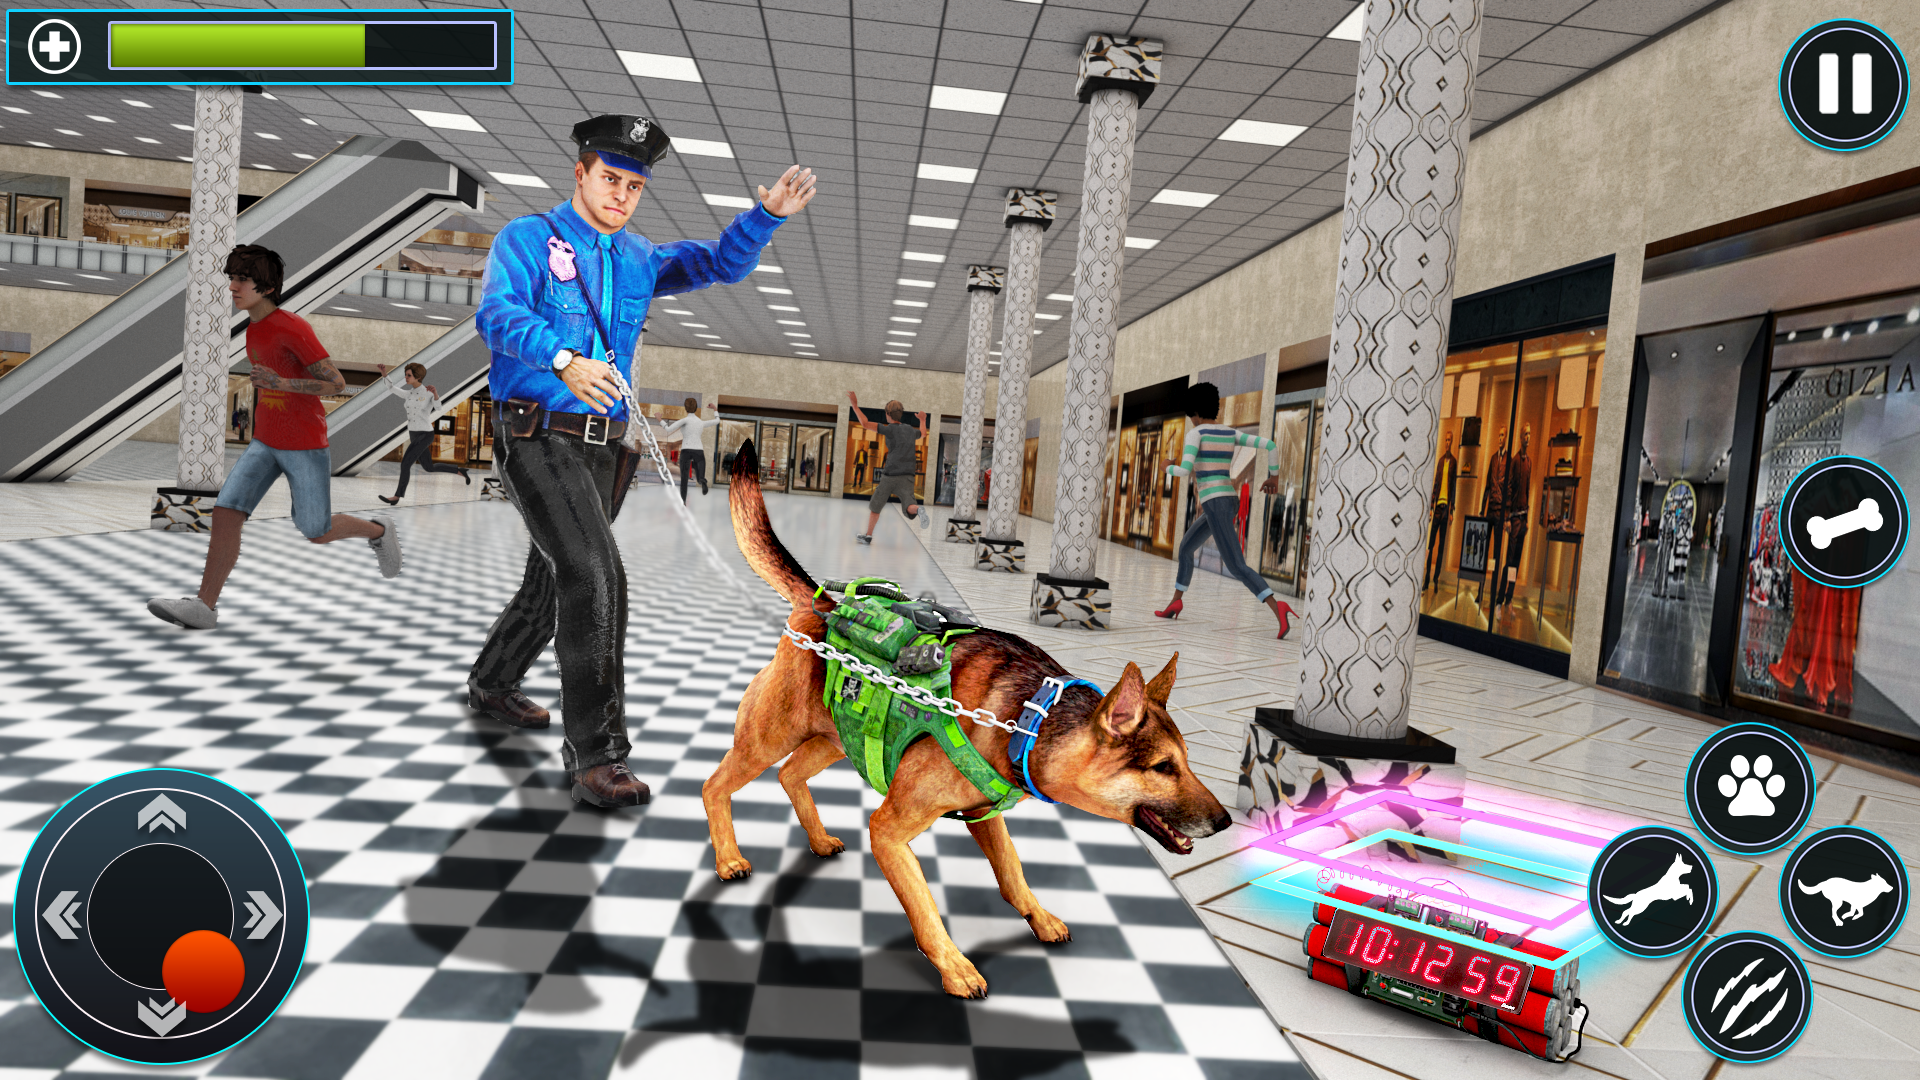 Download do APK de Cachorro correr atrás Jogos : Polícia Crime